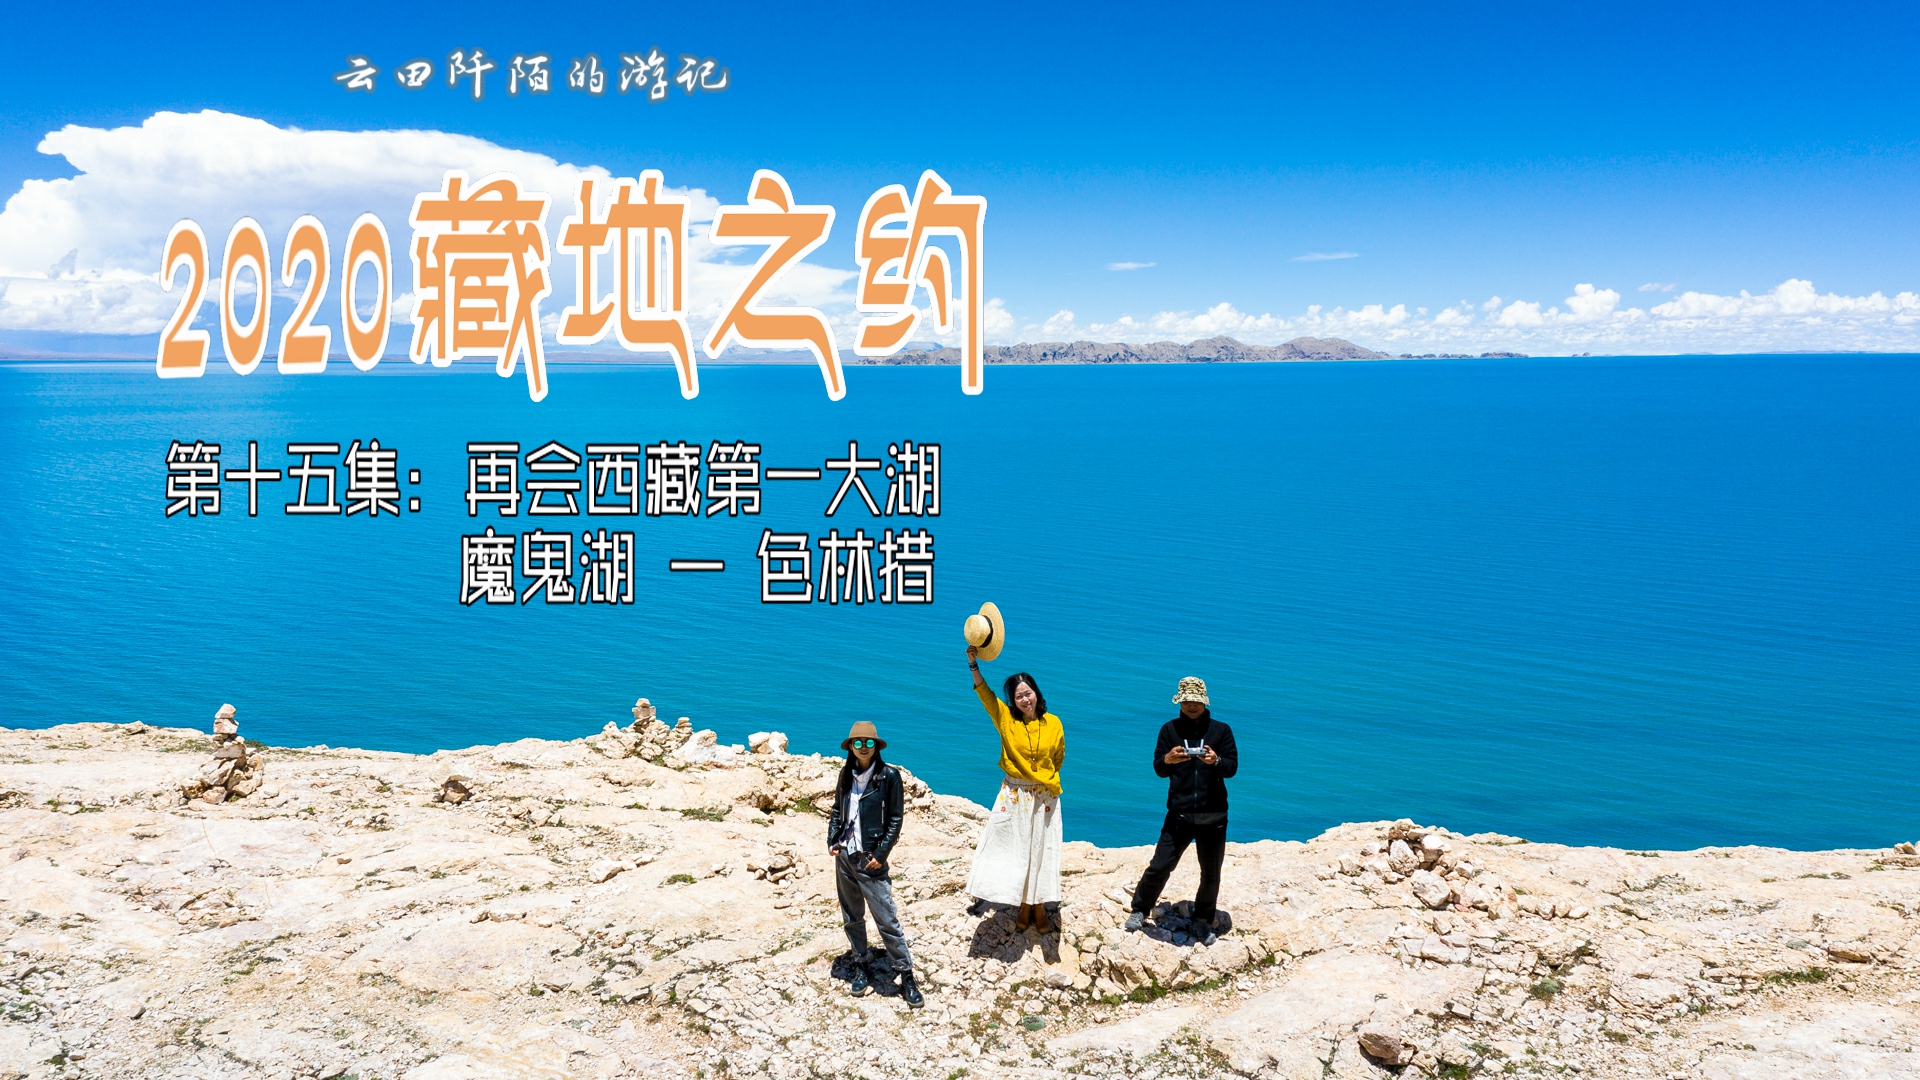 第十五集 再会西藏第一大湖魔鬼湖 色林措